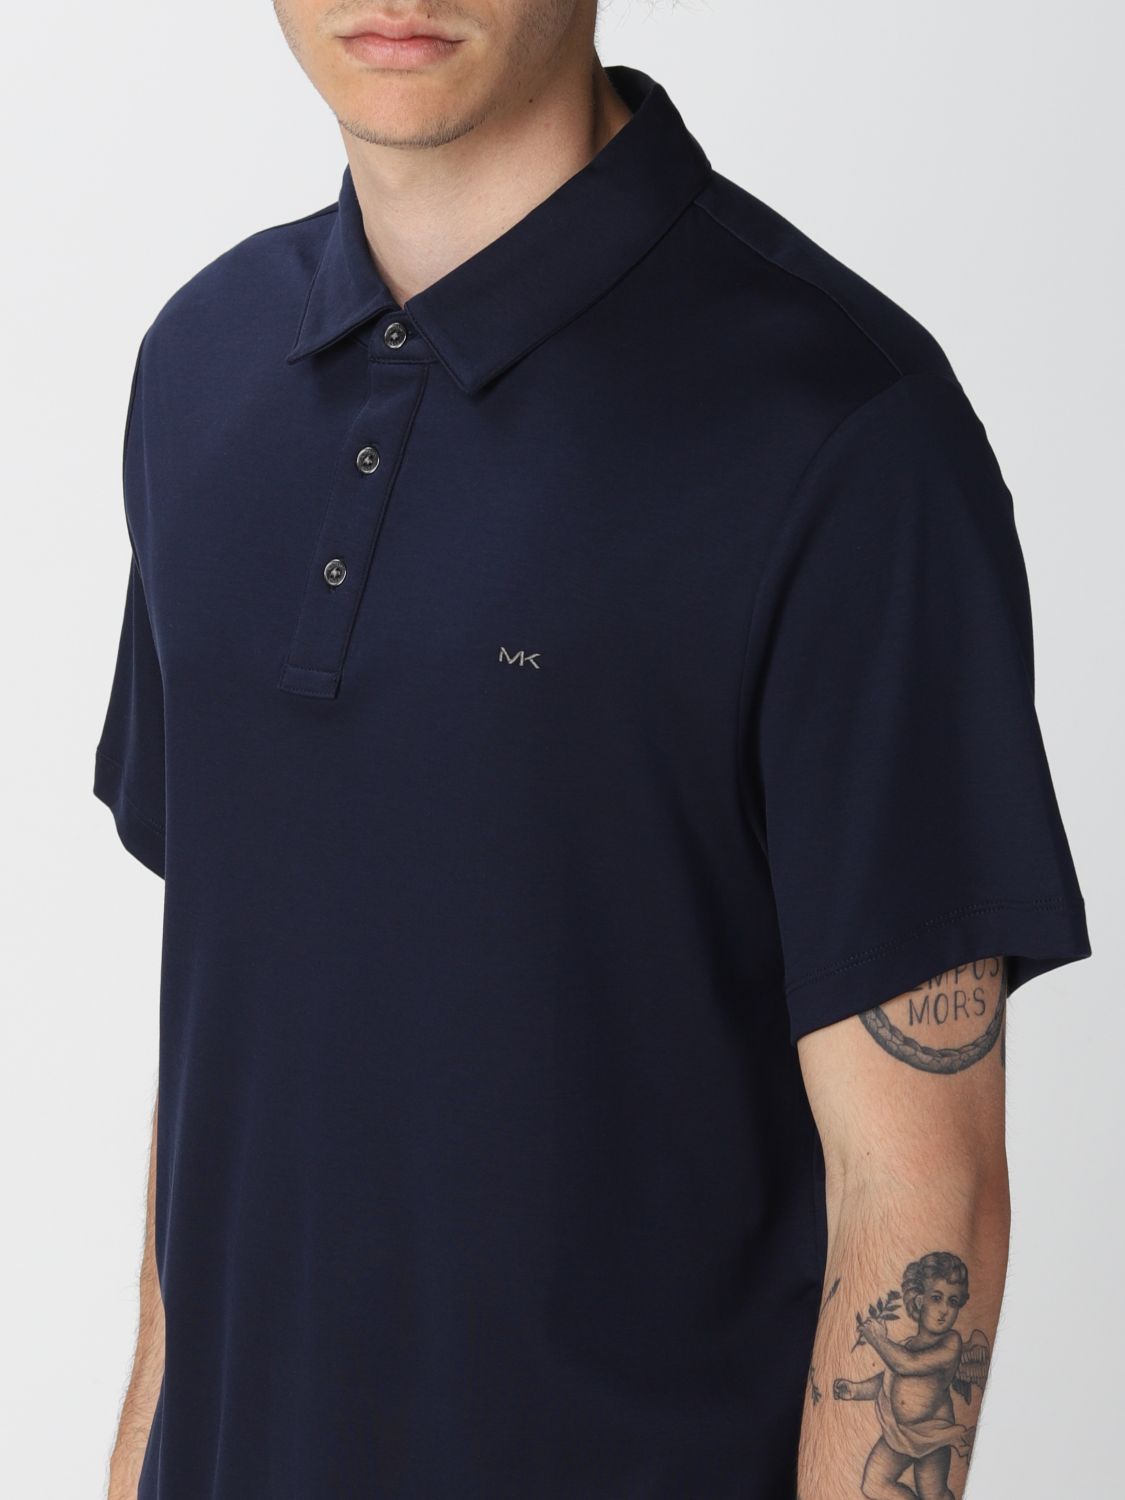 Michael Michael Kors Outlet: polo shirt for men - Blue | Michael ...